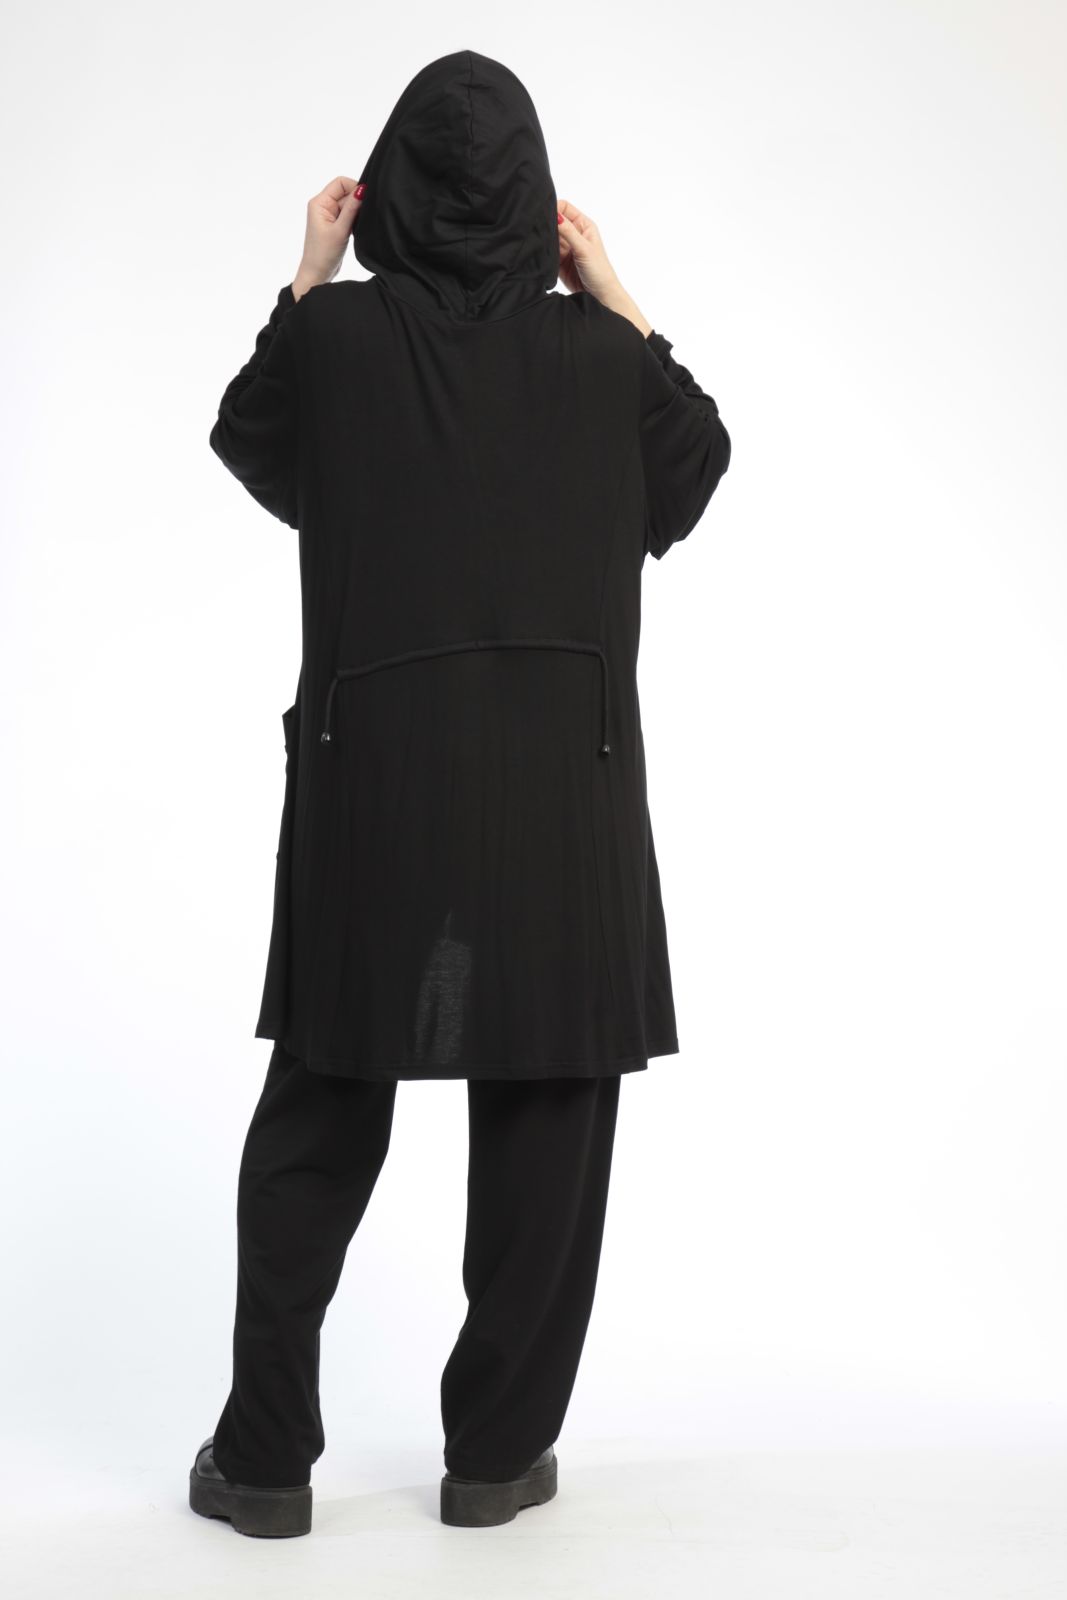 Alltags Jacke in A-Form aus er Jersey Qualität, Schwarz Lagenlook Oversize Mode B2B Großhandel